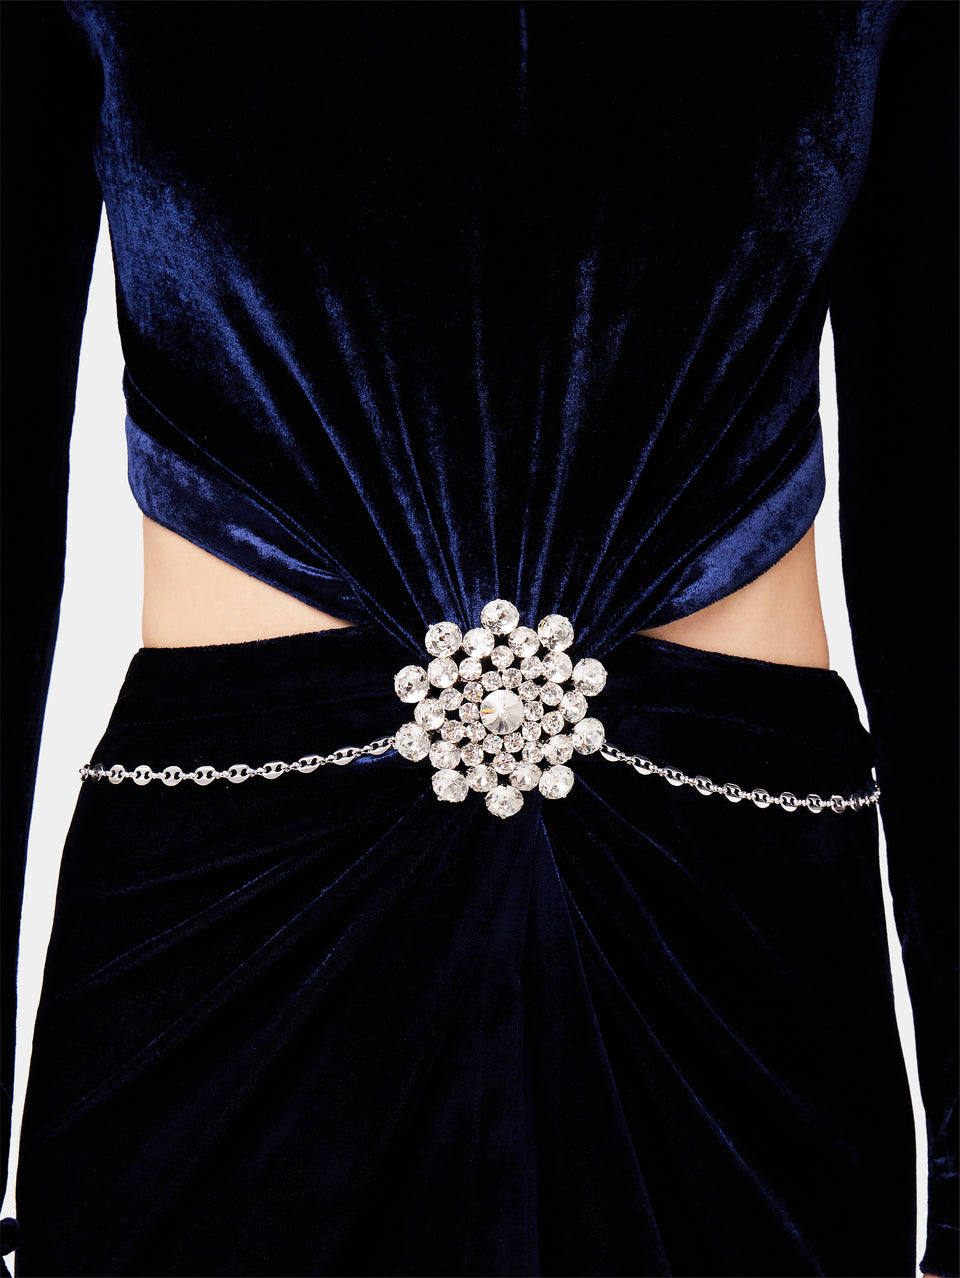 long blue velvet dress with jewelled belt